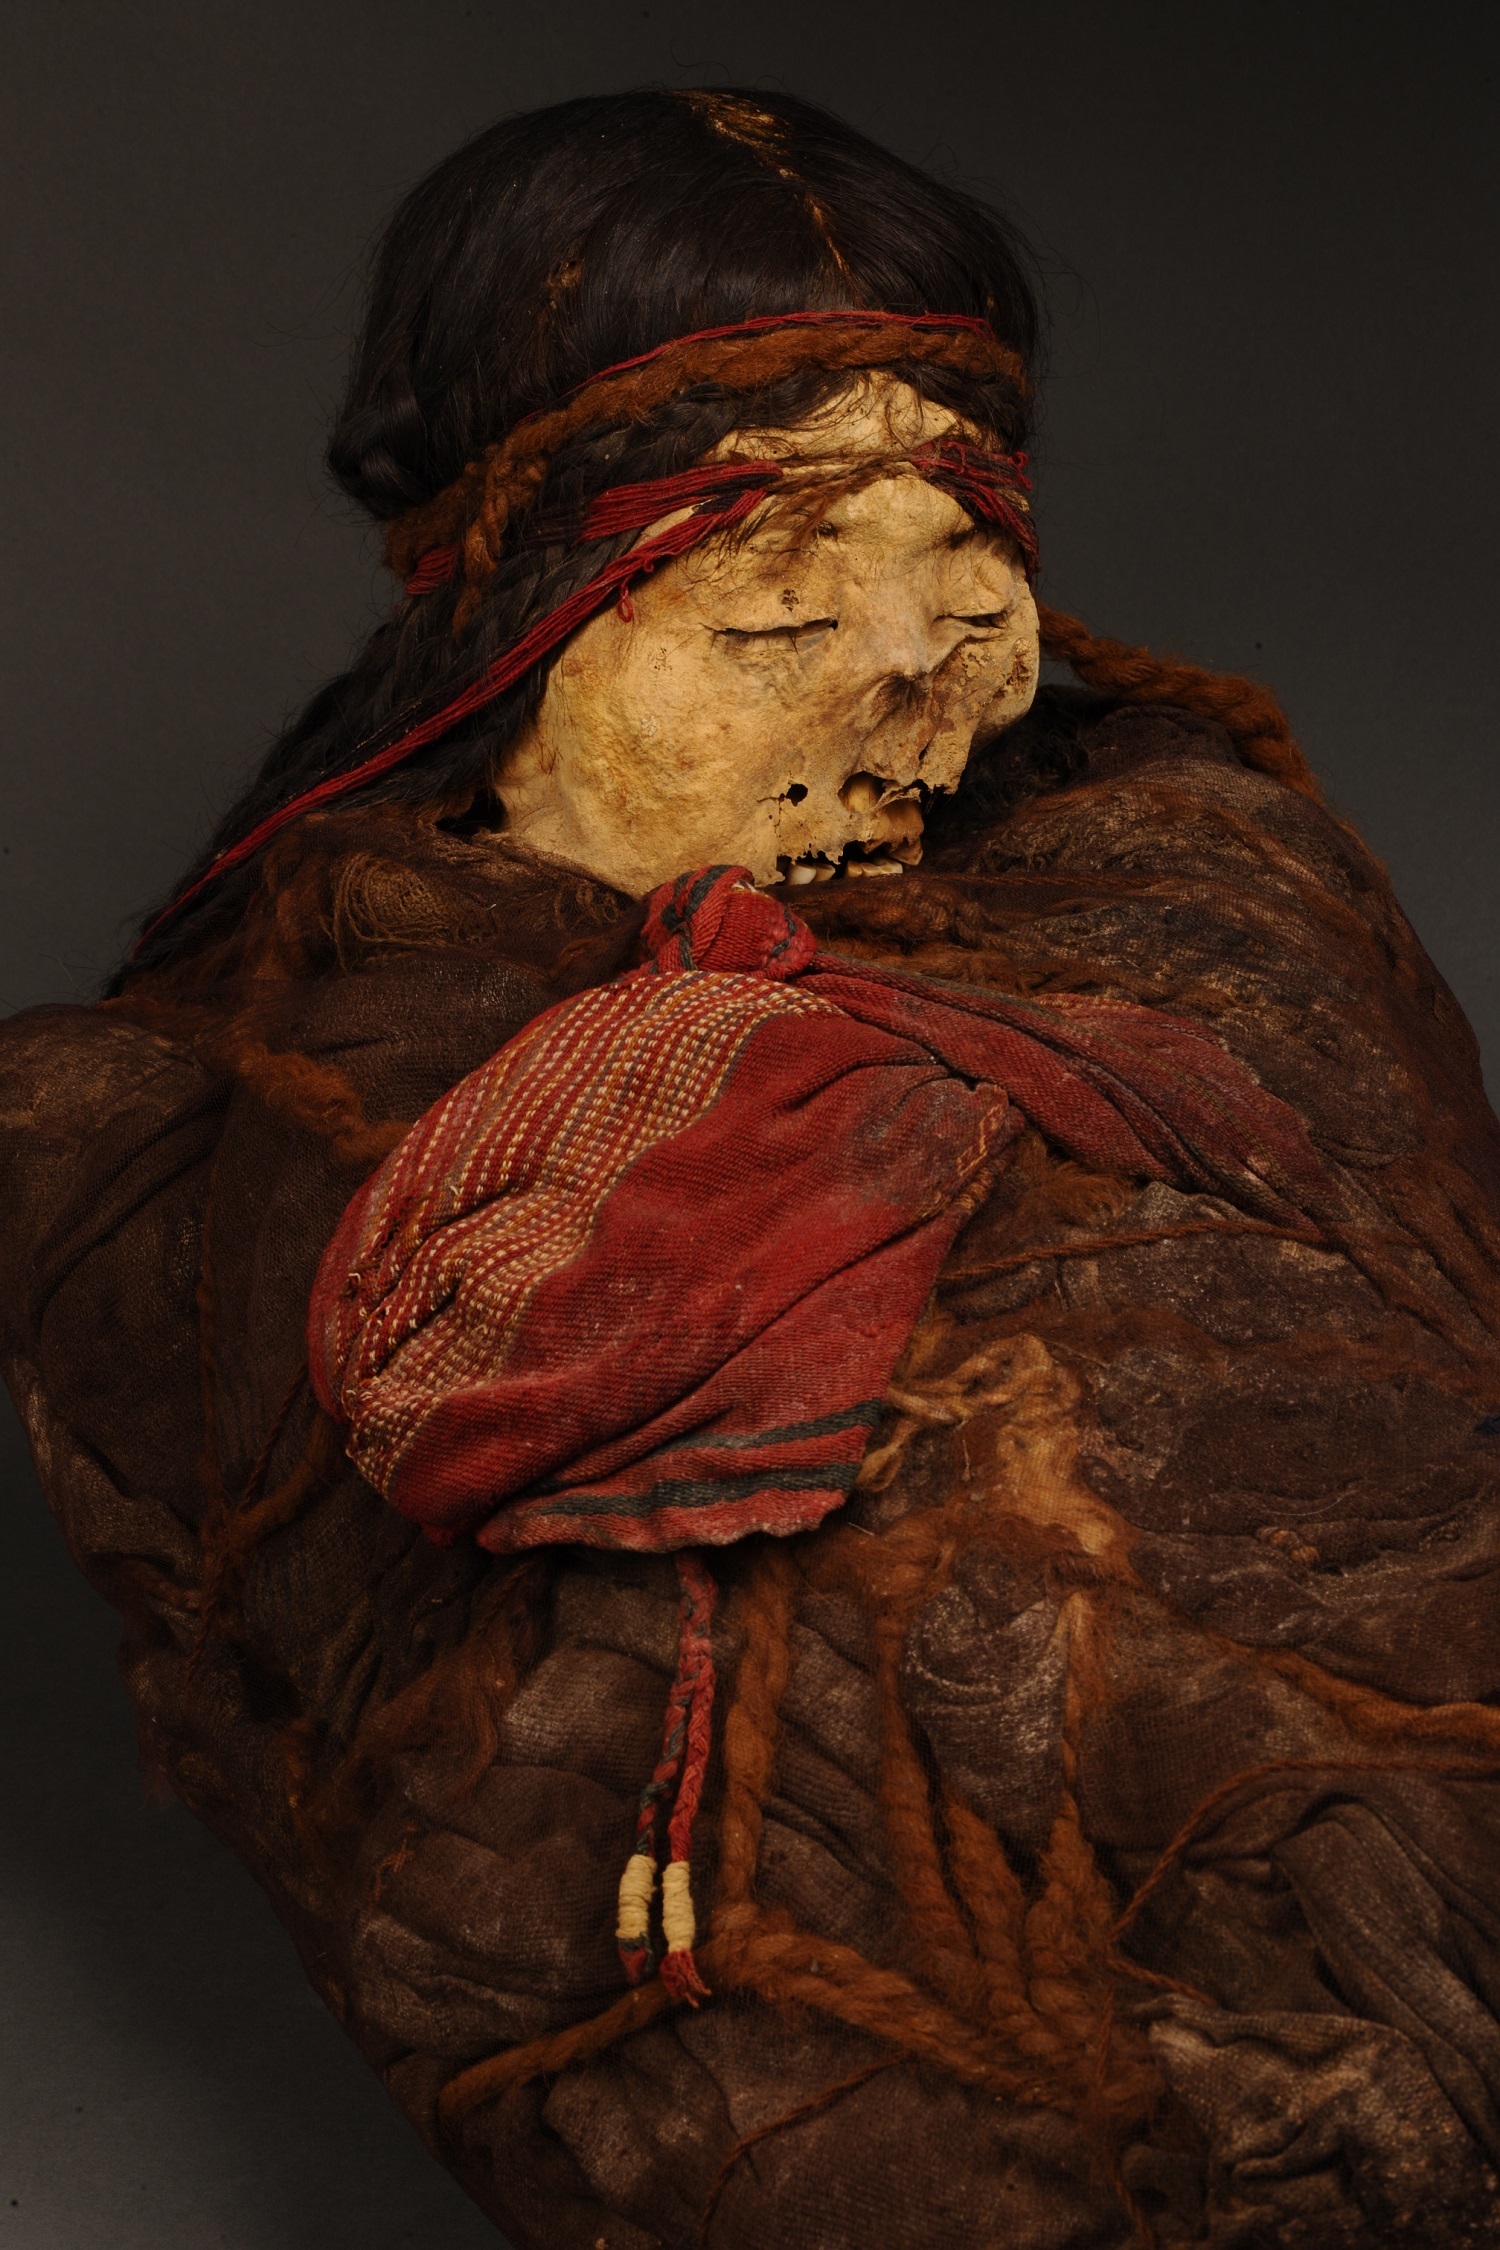 《チリバヤ文化のミイラとその副葬品（女性幼児)》 チリバヤ文化(紀元900年頃から1440年頃) ペルー文化省・ミイラ研究所・チリバヤ博物館所蔵